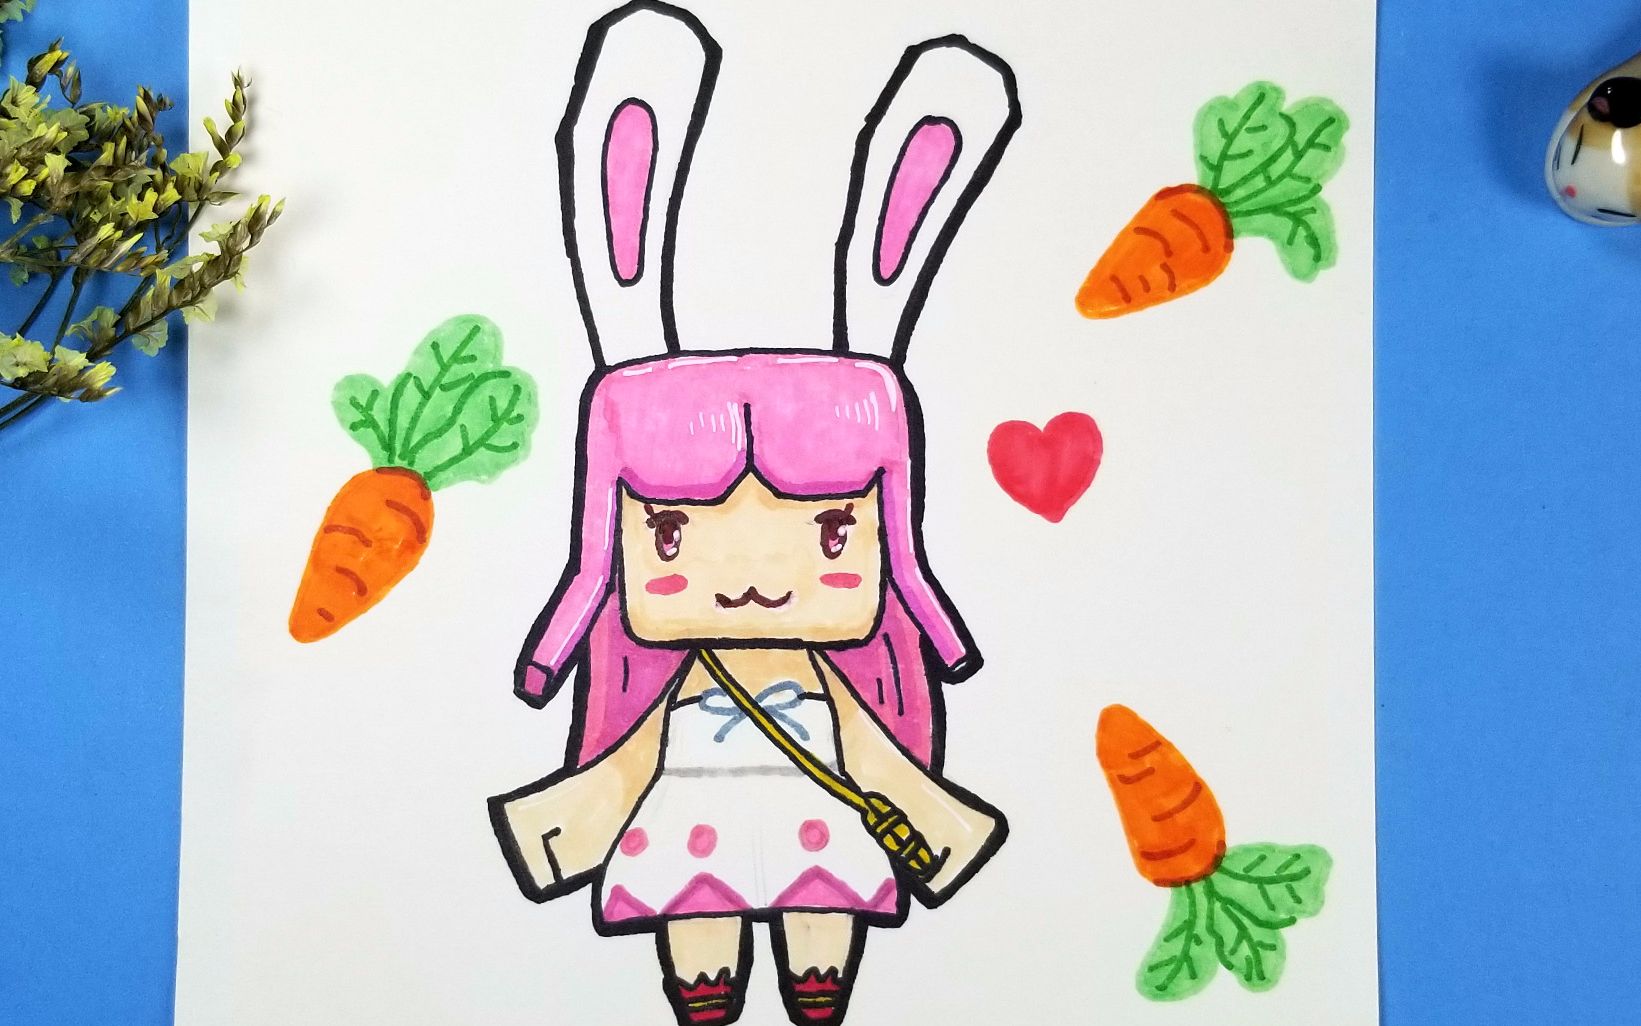 迷你世界人气装扮兔美美来啦,用你的画笔将她画得更可爱吧